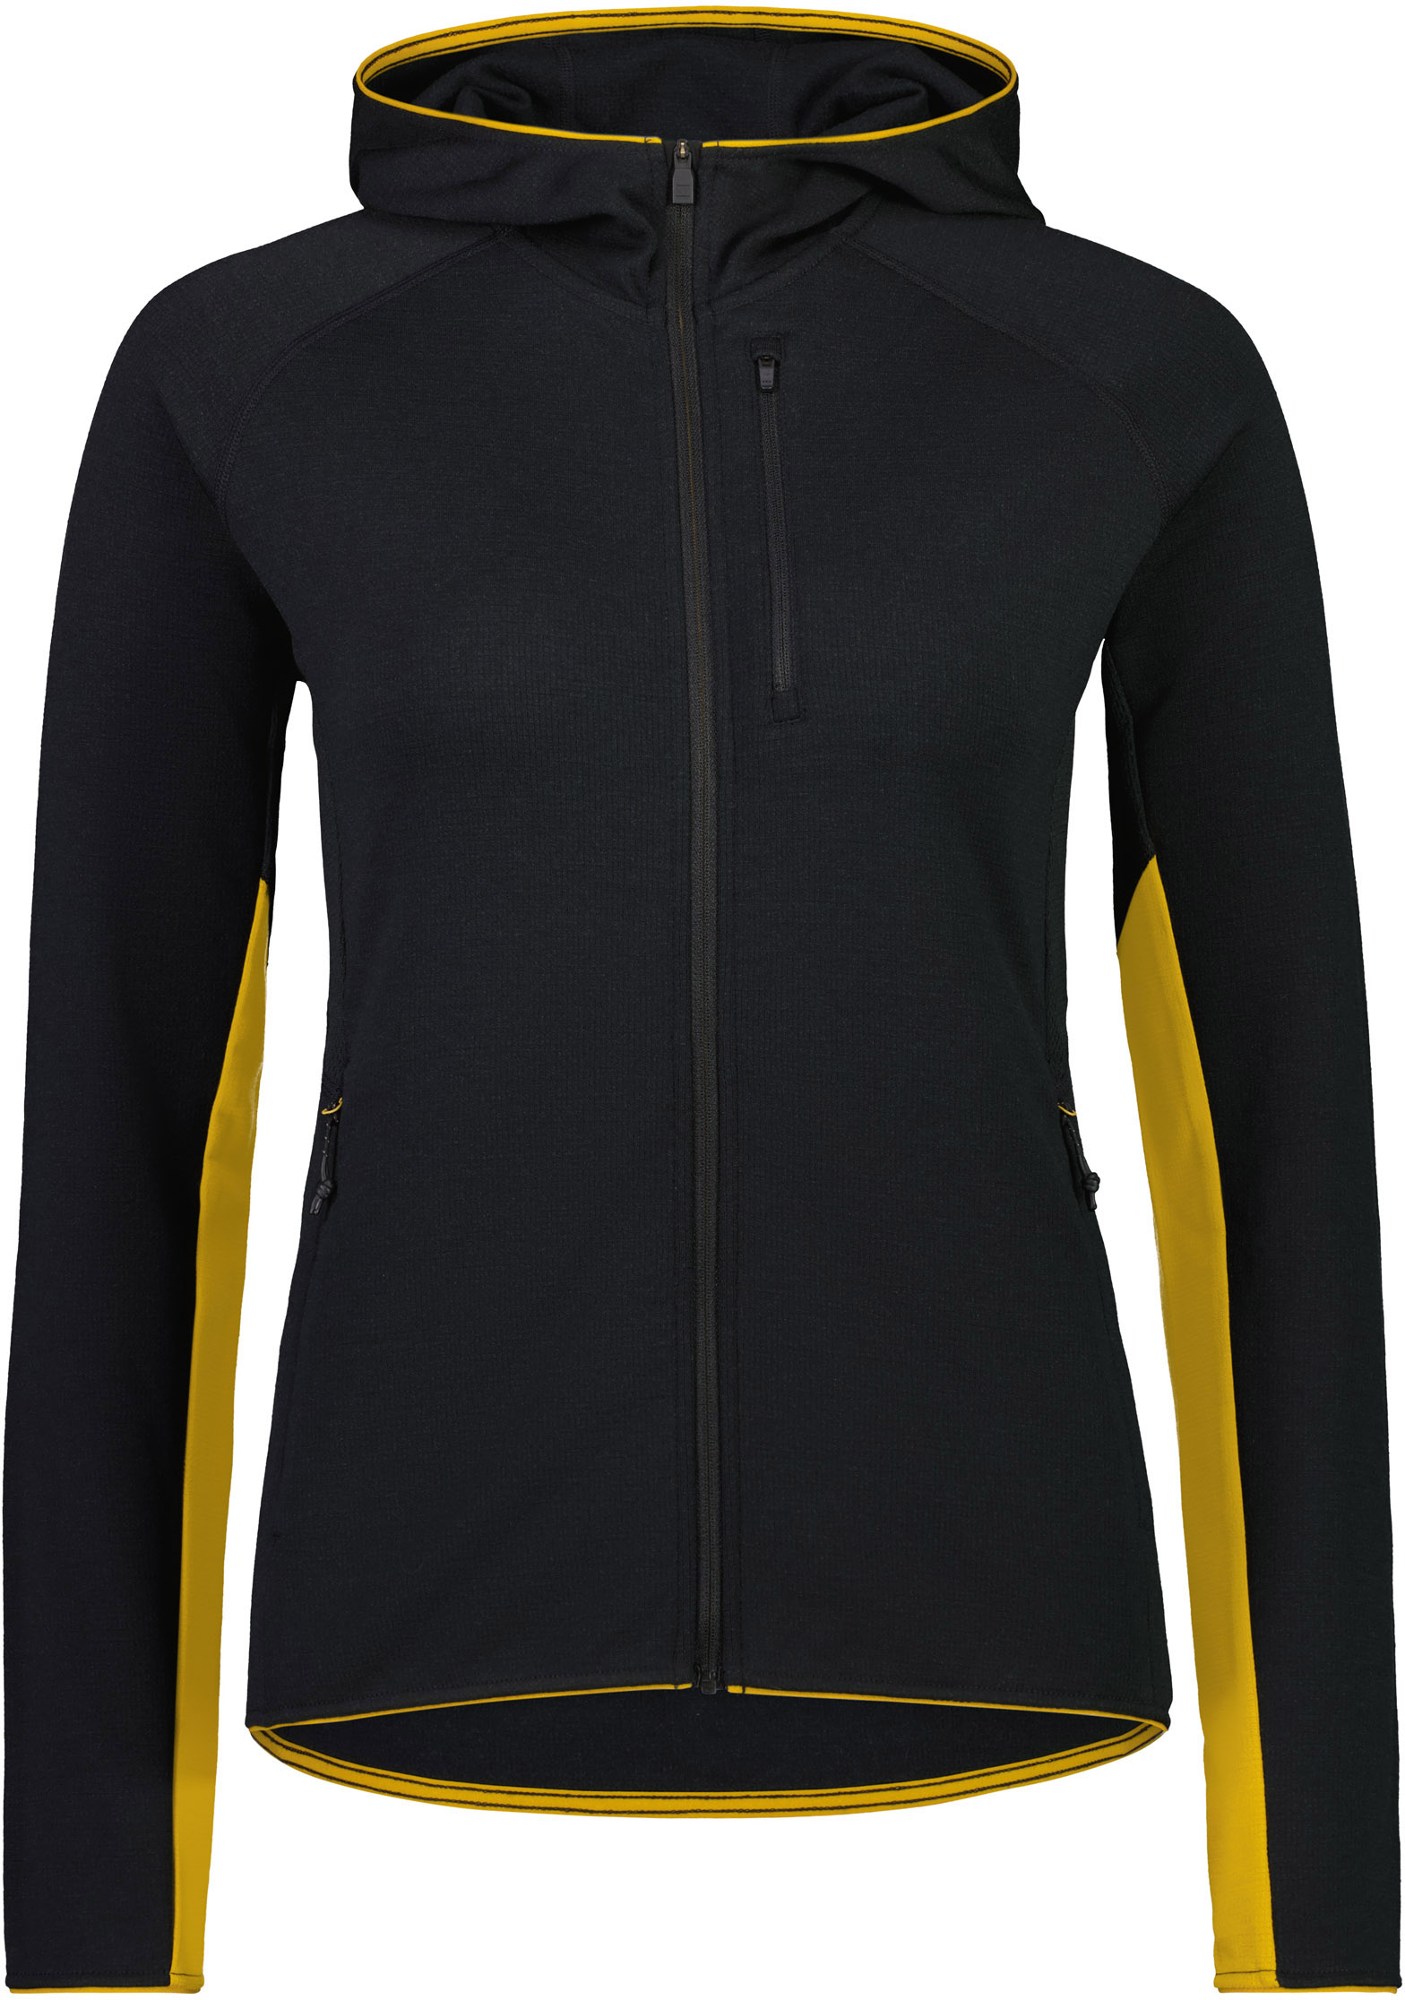 Куртка с капюшоном Approach Merino Gridlock, женская Mons Royale, черный